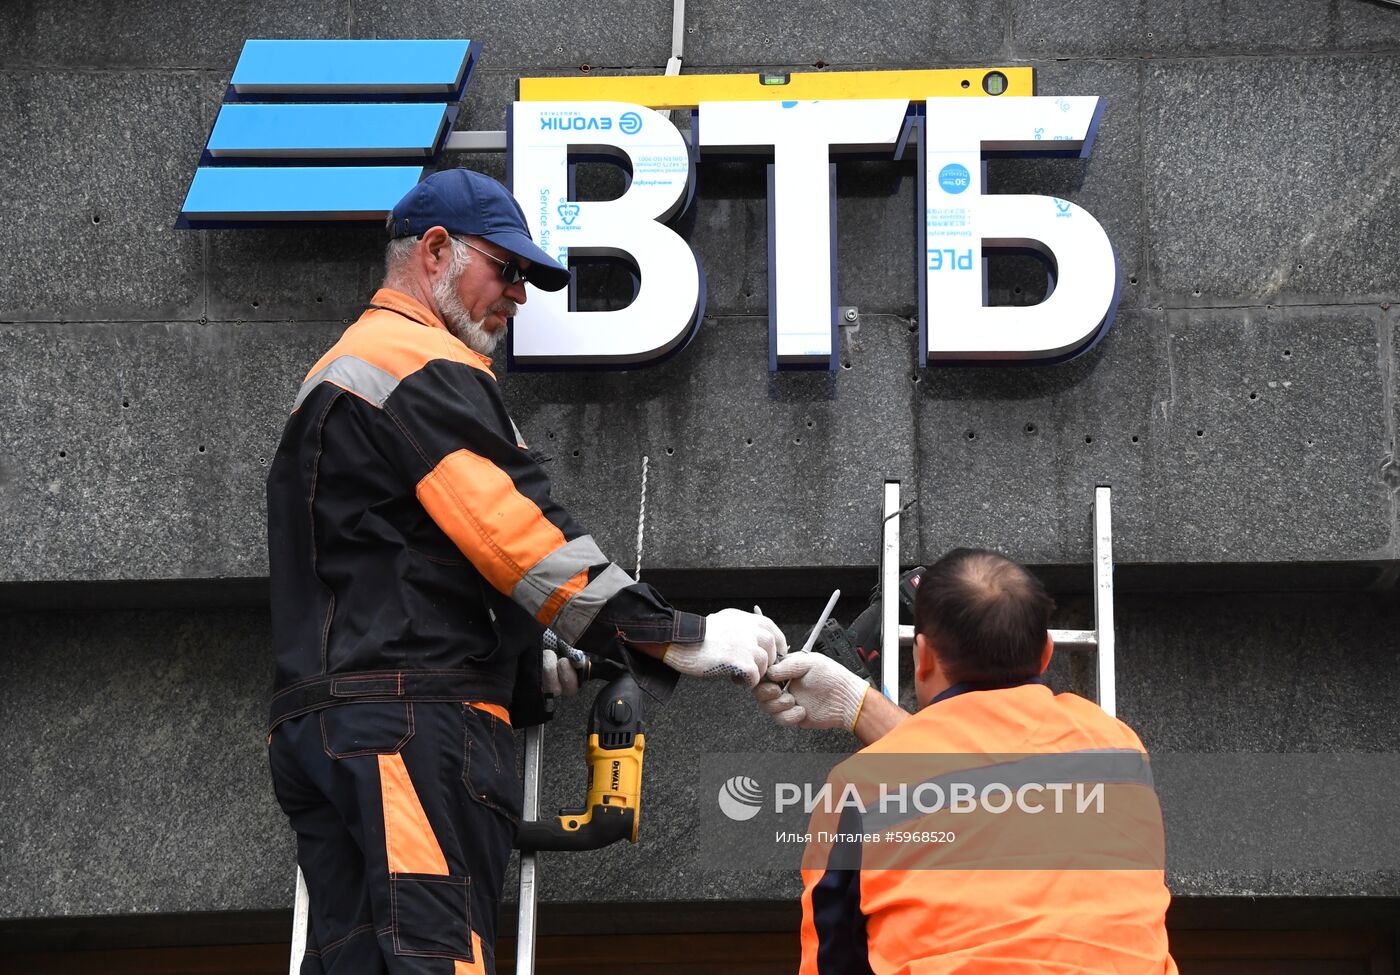 Установка эмблемы  банка ВТБ на Тверской улице